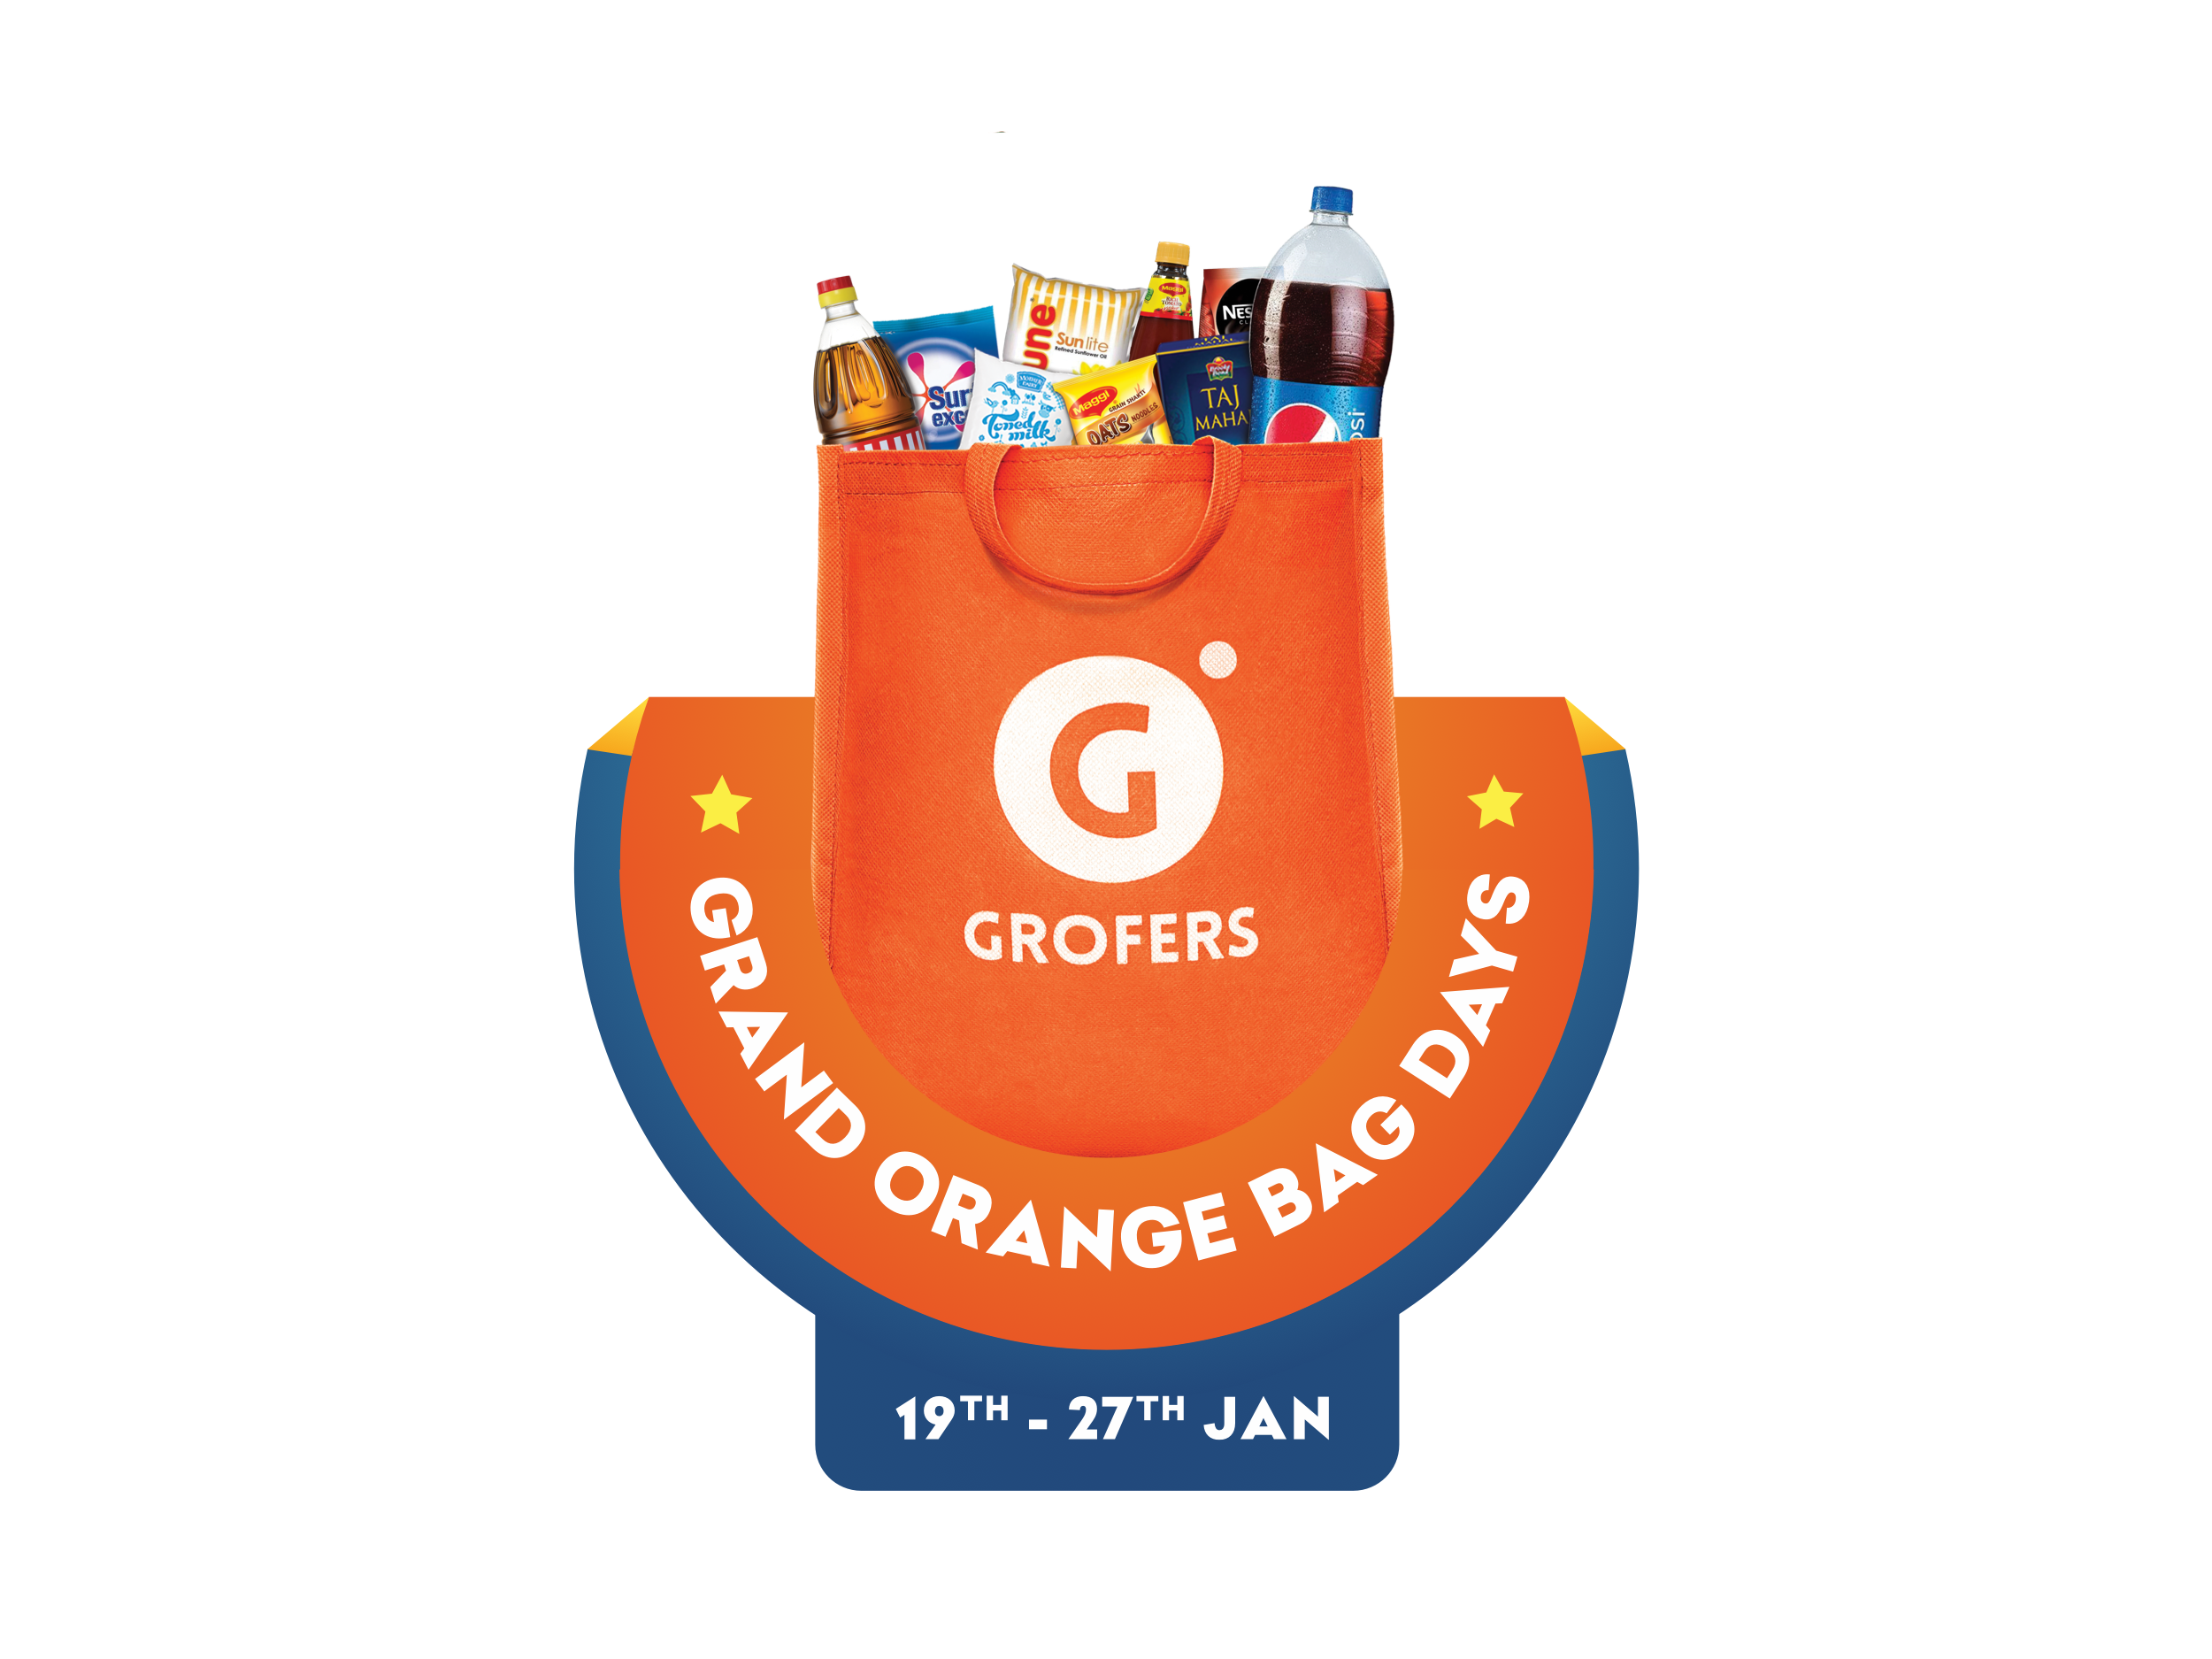 Details 80+ great orange bag days - in.cdgdbentre